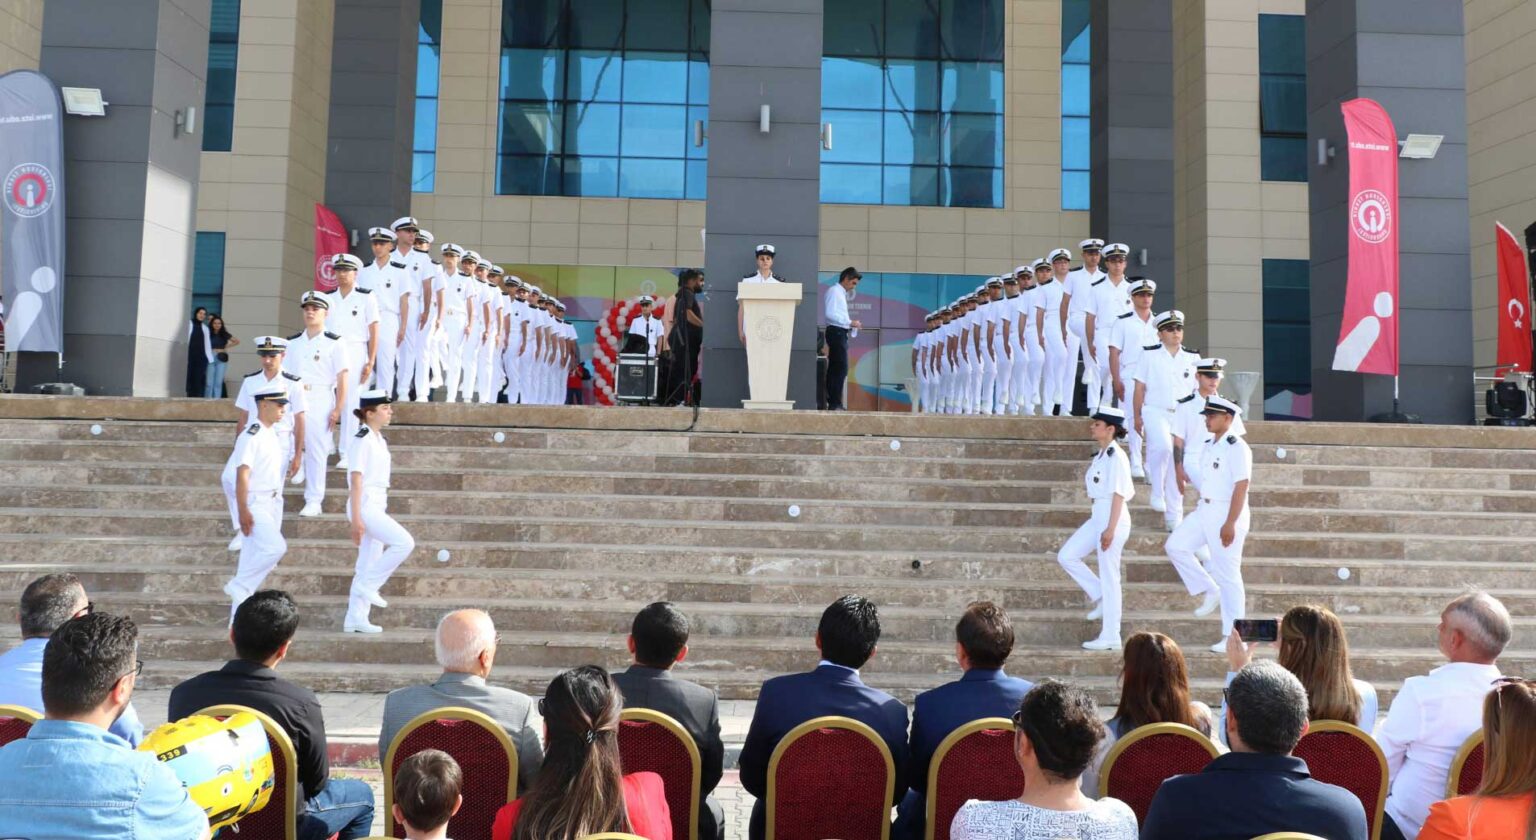 İskenderun Teknik Üniversitesi (İSTE) Barbaros Hayrettin Gemi İnşaatı ve Denizcilik Fakültesi'nde 23 Nisan Ulusal Egemenlik ve Çocuk Bayramı coşkusuyla yemin töreni düzenlendi.